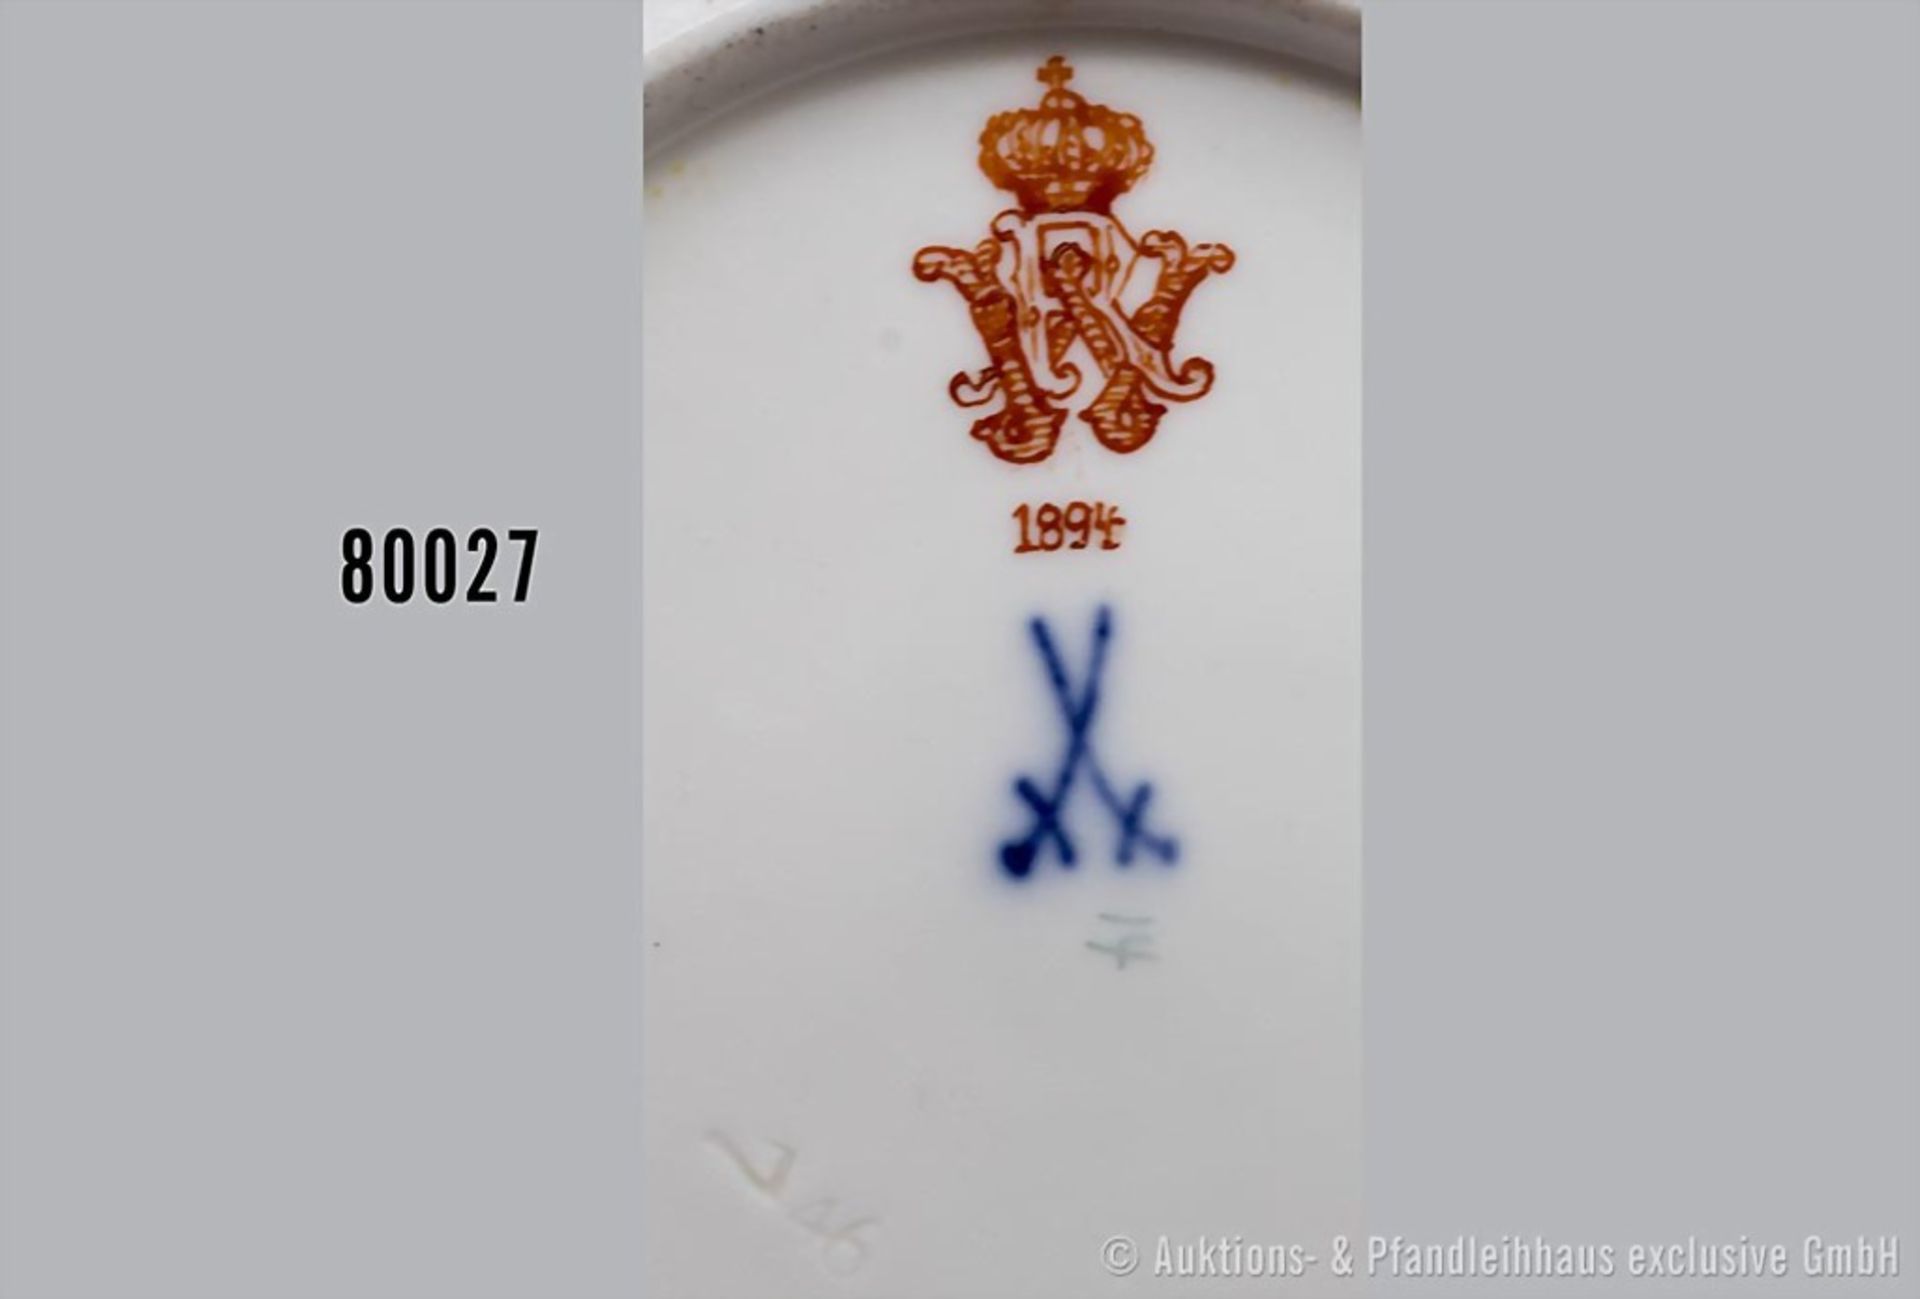 Konv. Porzellan Kuchenteller, D 20 cm und Untertasse, D 15 cm, Meissen, aus dem Service ... - Bild 2 aus 3